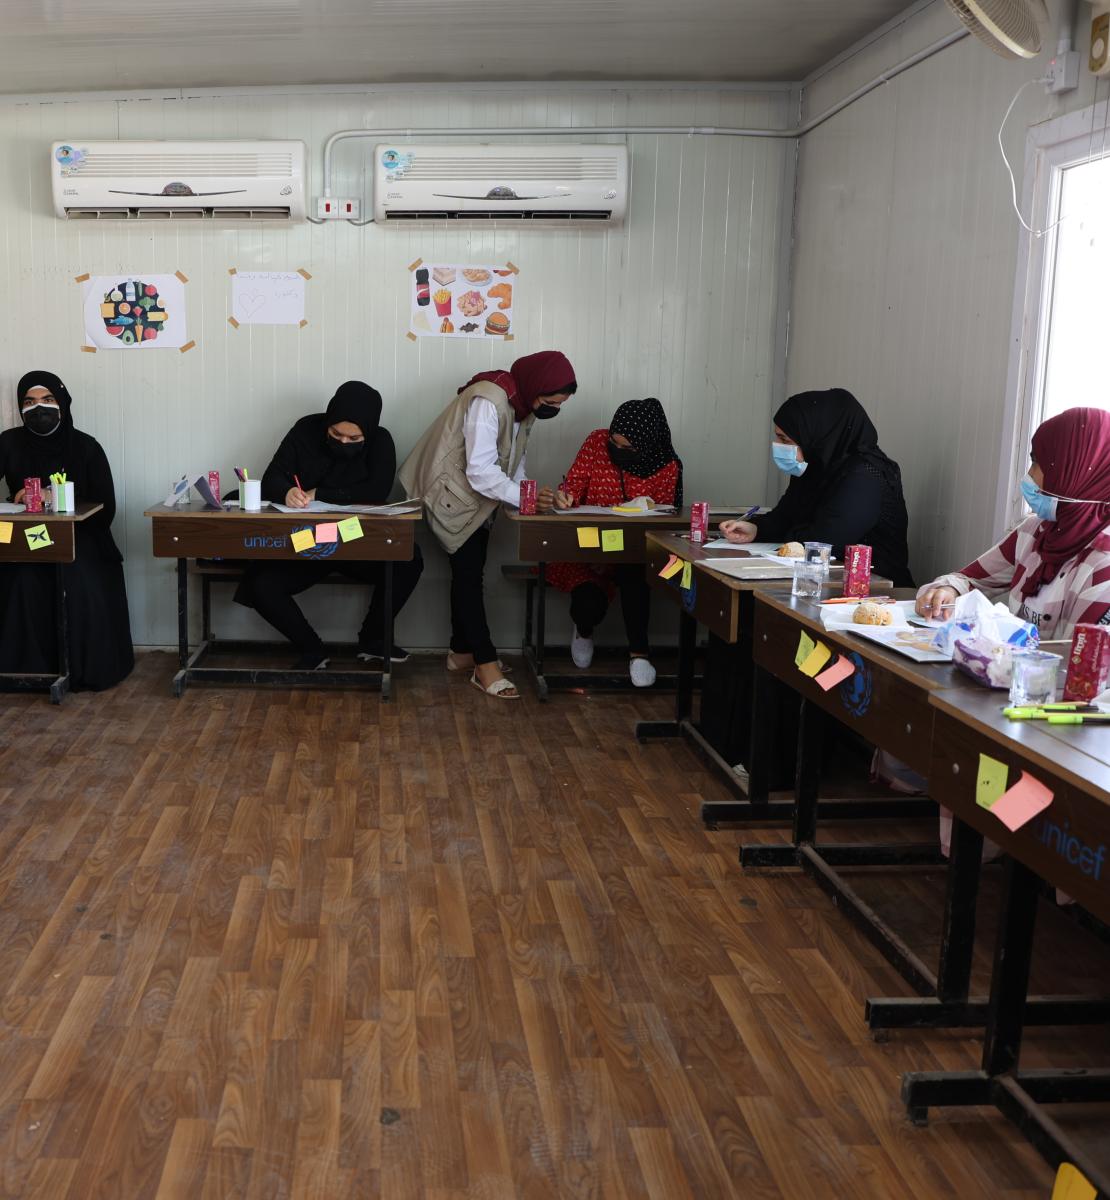 Un grupo de mujeres trabaja sobre sus pupitres, con una instructora que ayuda a una alumna.